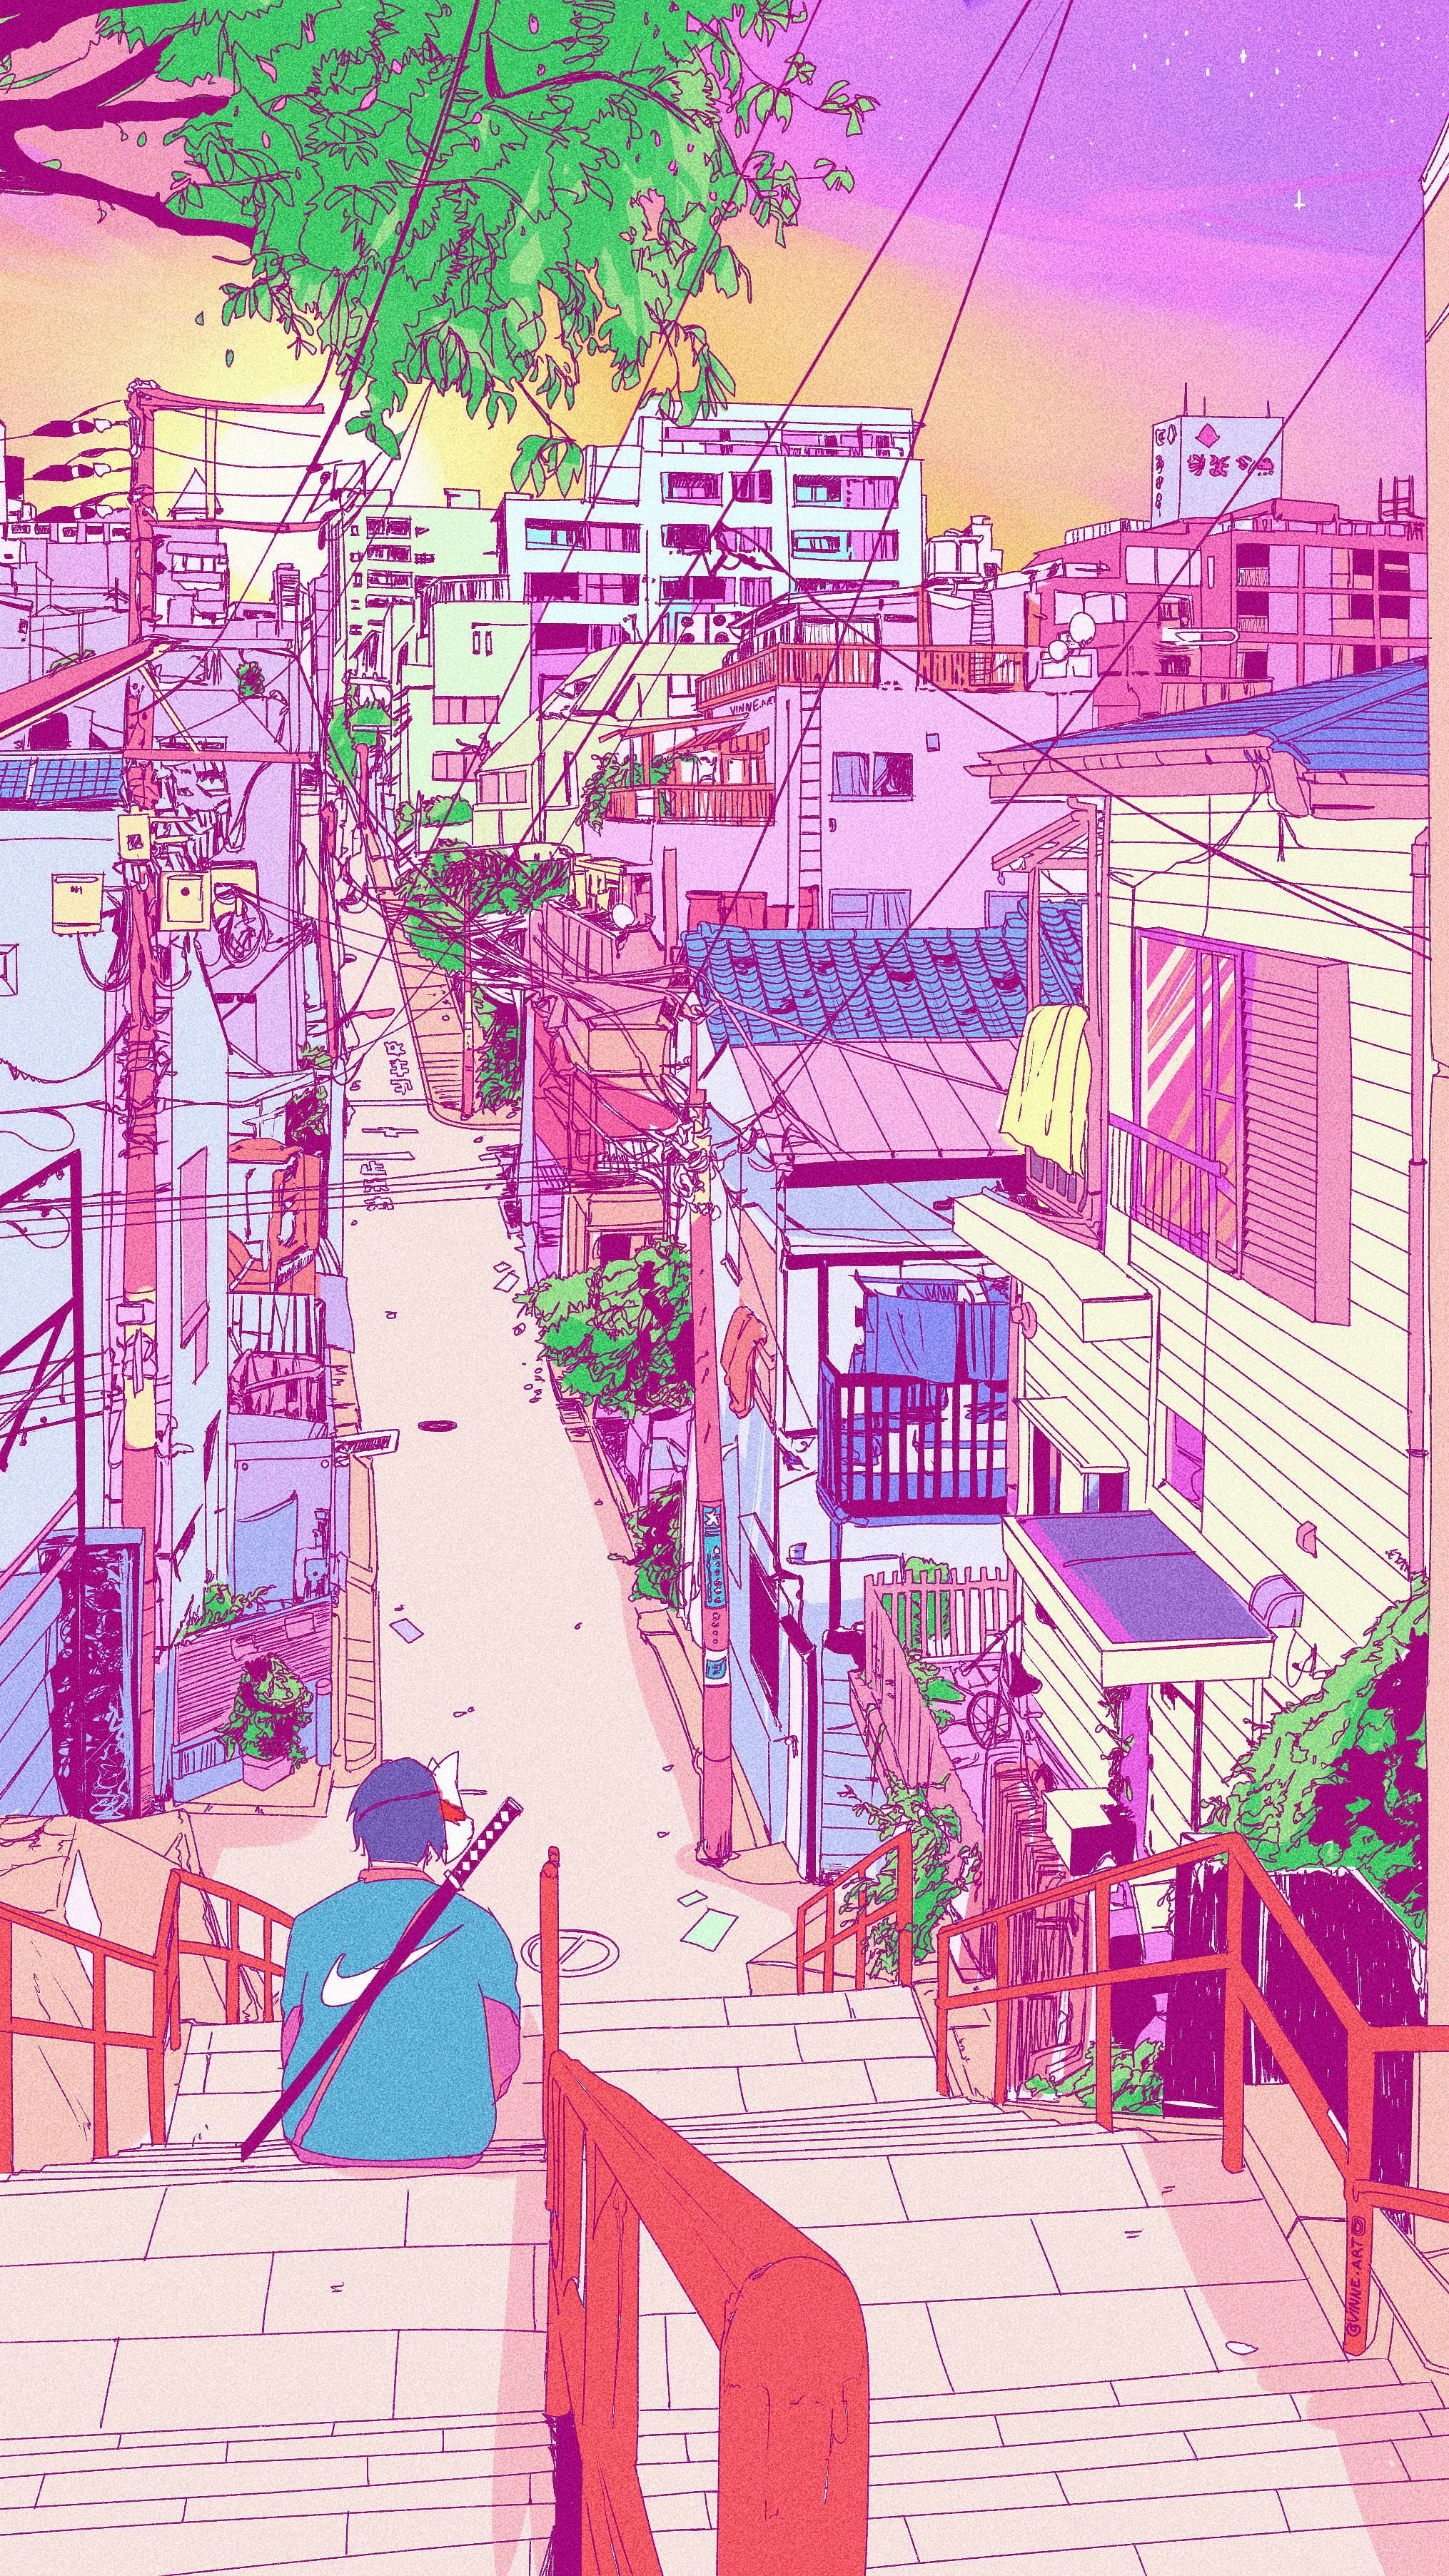 Japanese Wallpaper Anime Images  Free Download on Freepik